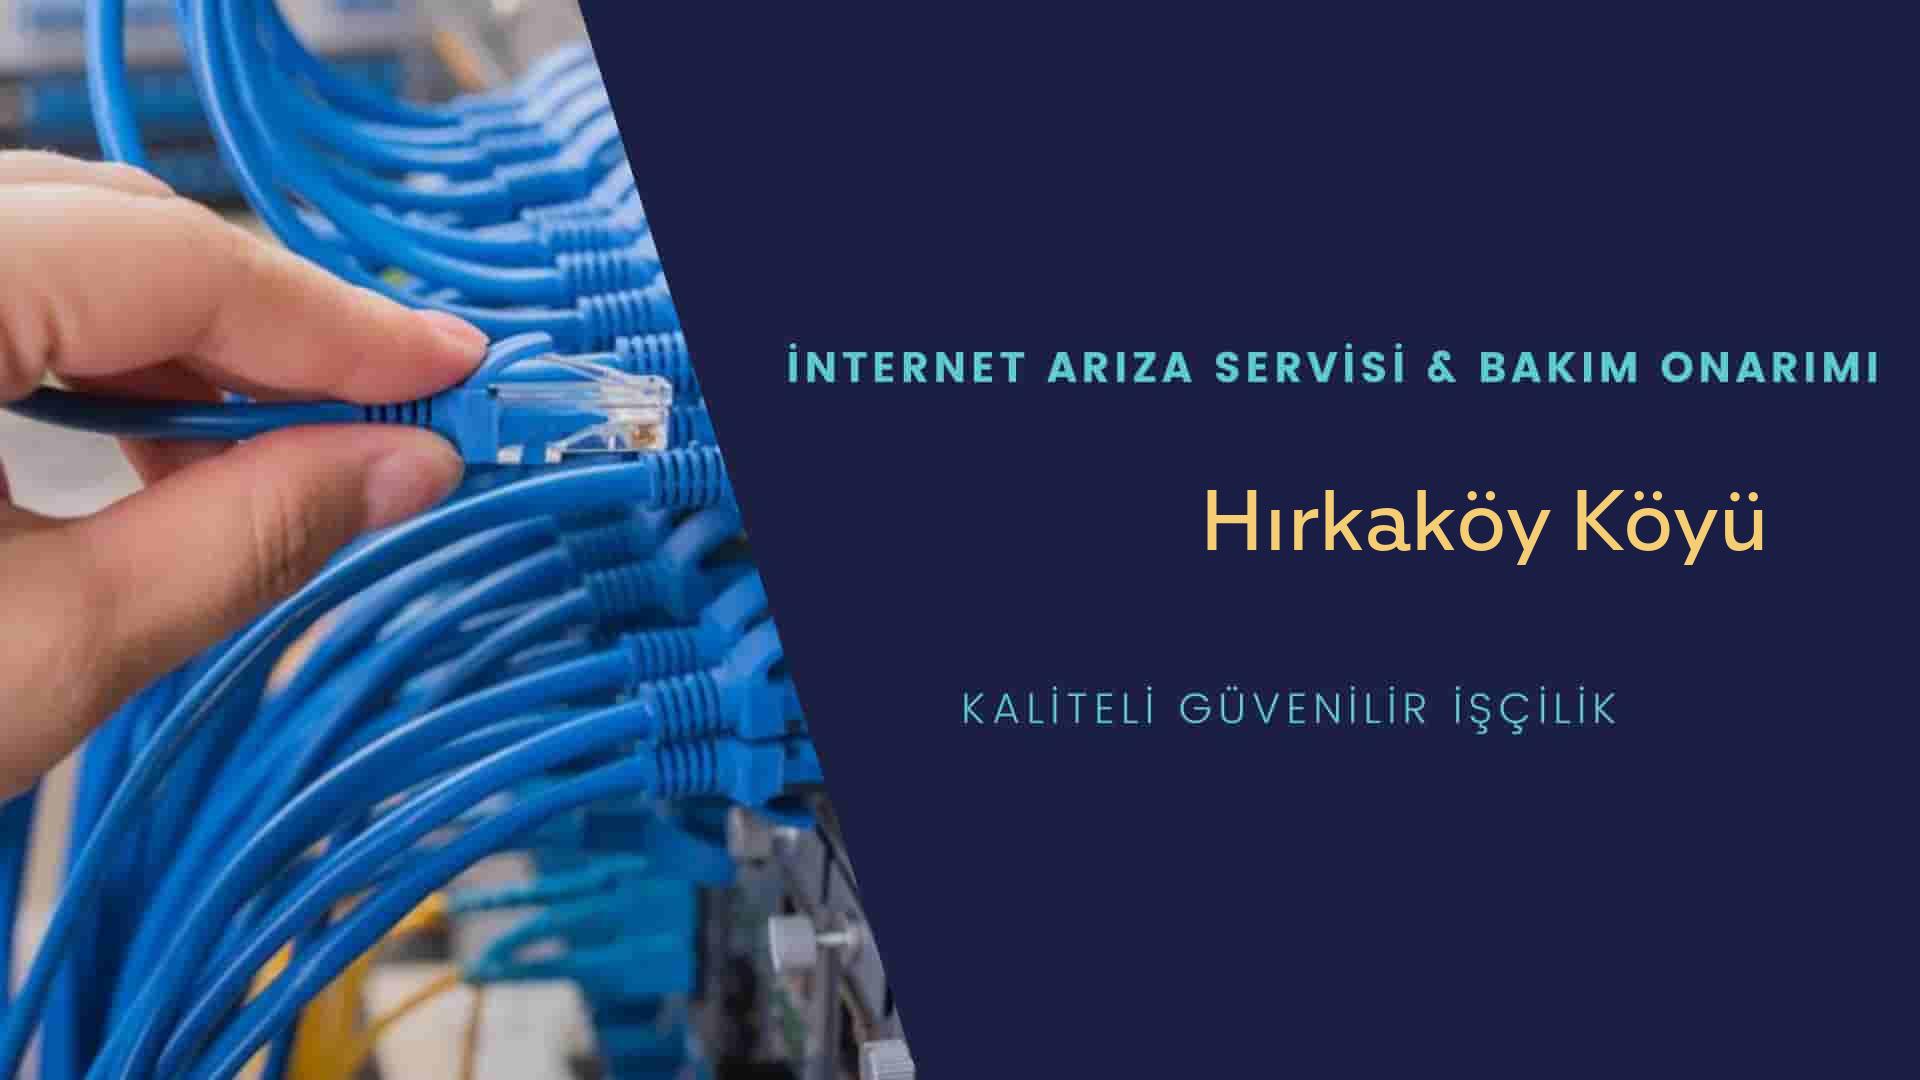 Hırkaköy Köyü internet kablosu çekimi yapan yerler veya elektrikçiler mi? arıyorsunuz doğru yerdesiniz o zaman sizlere 7/24 yardımcı olacak profesyonel ustalarımız bir telefon kadar yakındır size.